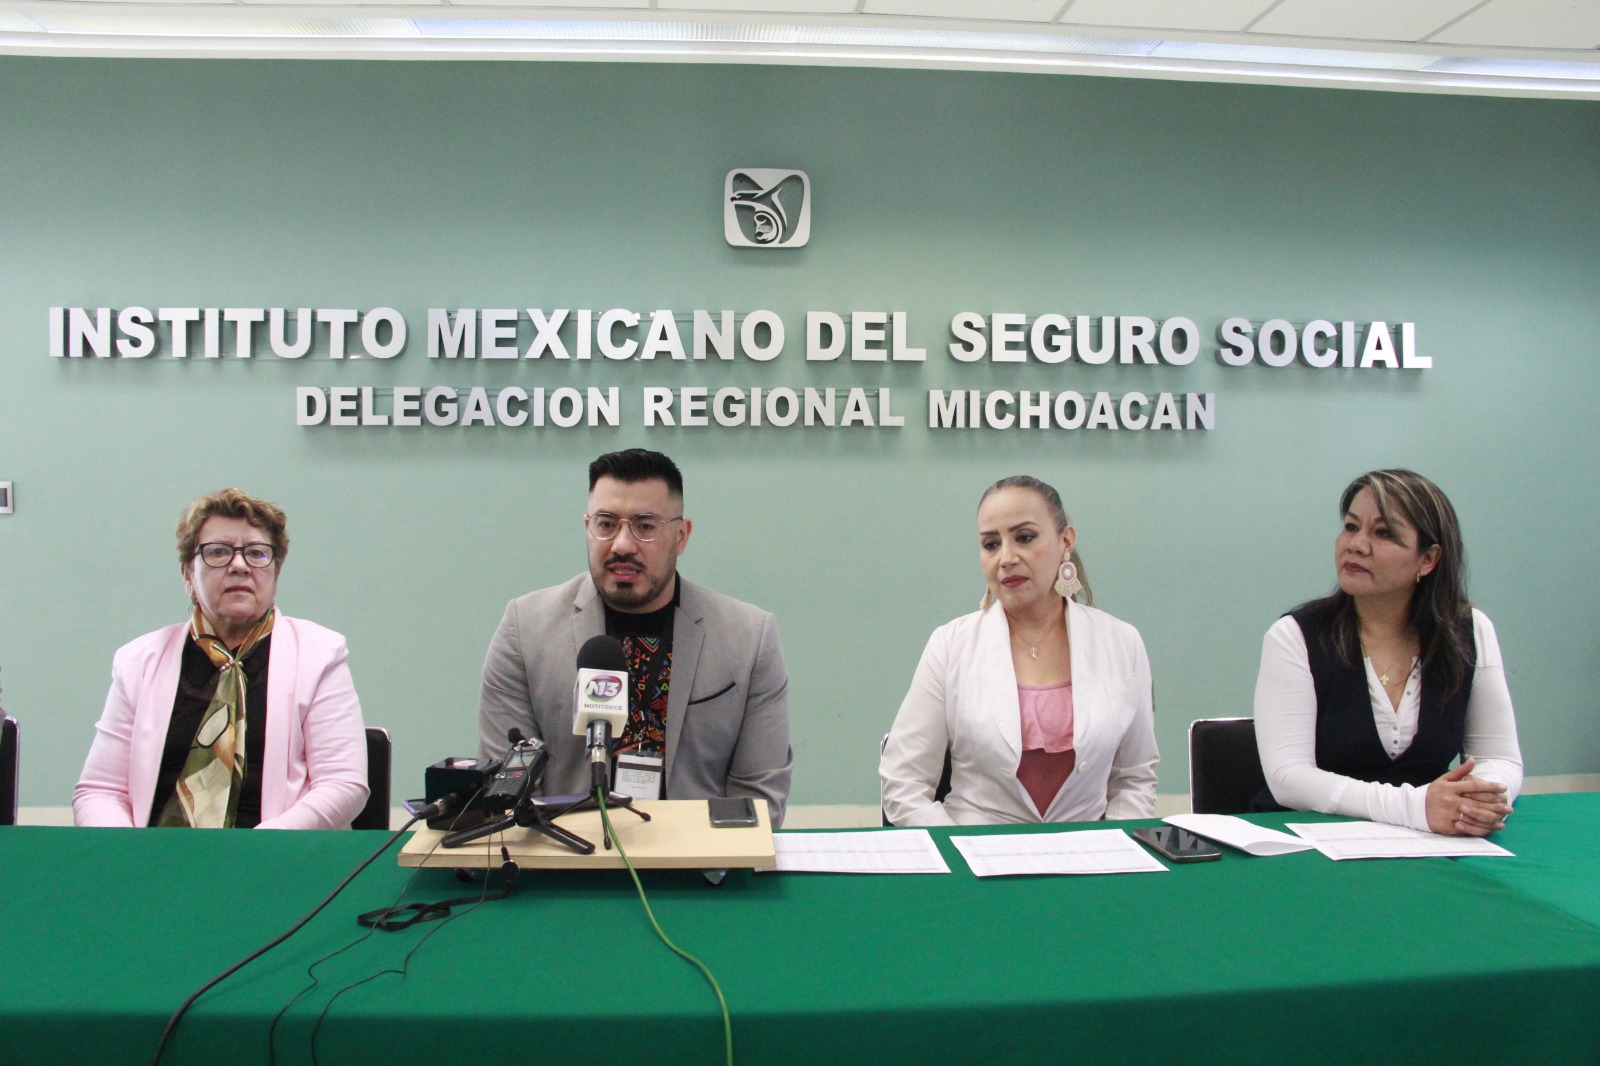 Realiza IMSS Michoacán 10 trasplantes de córnea en Semana Santa y rompe récord con 24 en lo que va del año.